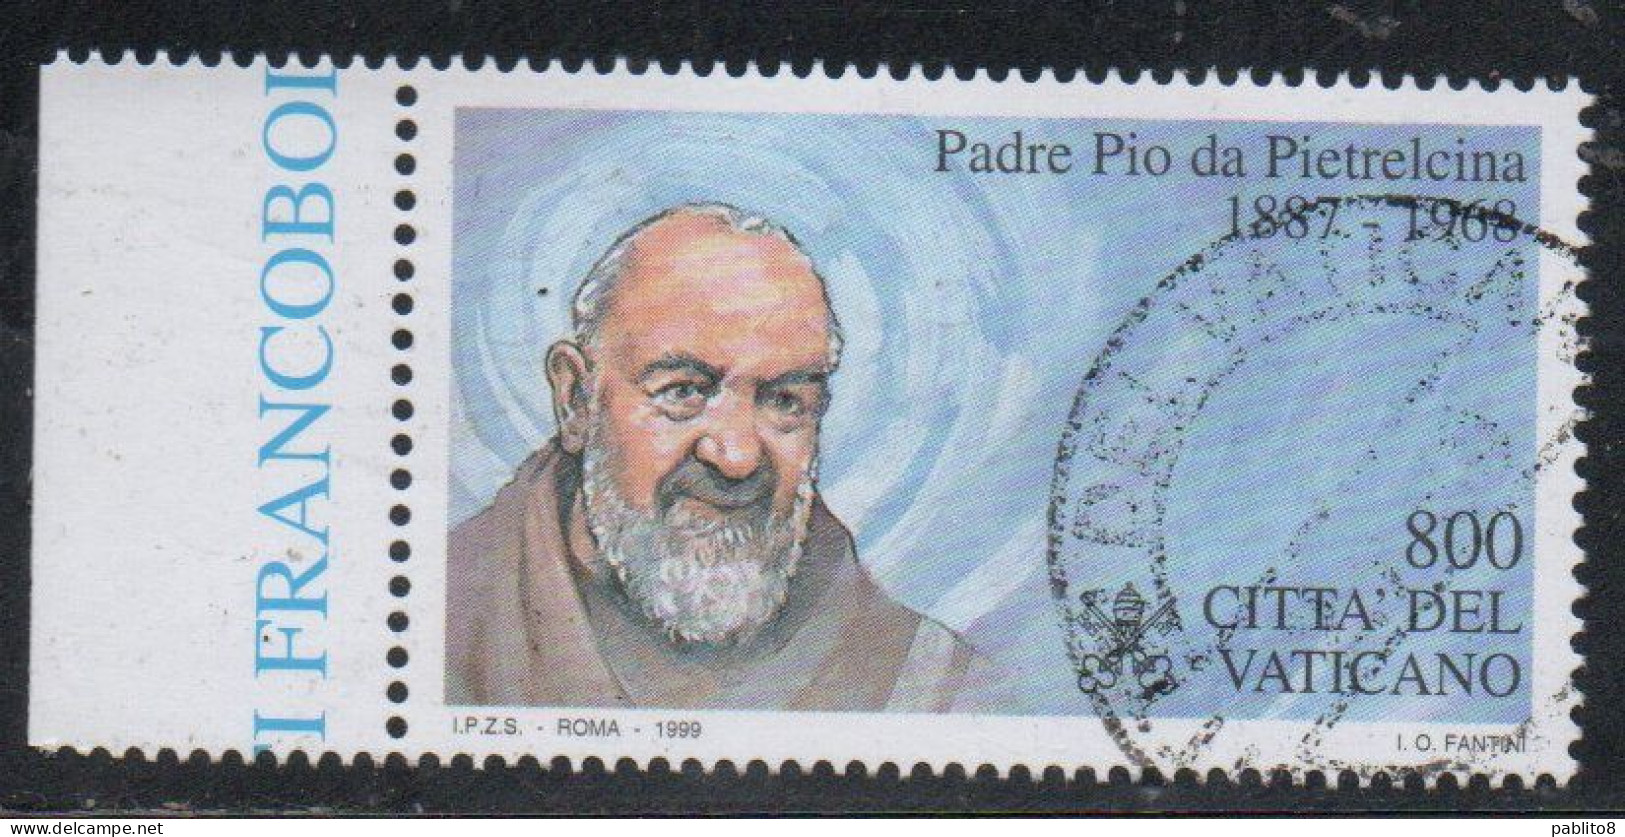 CITTÀ DEL VATICANO VATIKAN VATICAN 1999 PADRE PIO LIRE 900 USATO USED OBLITERE' - Used Stamps